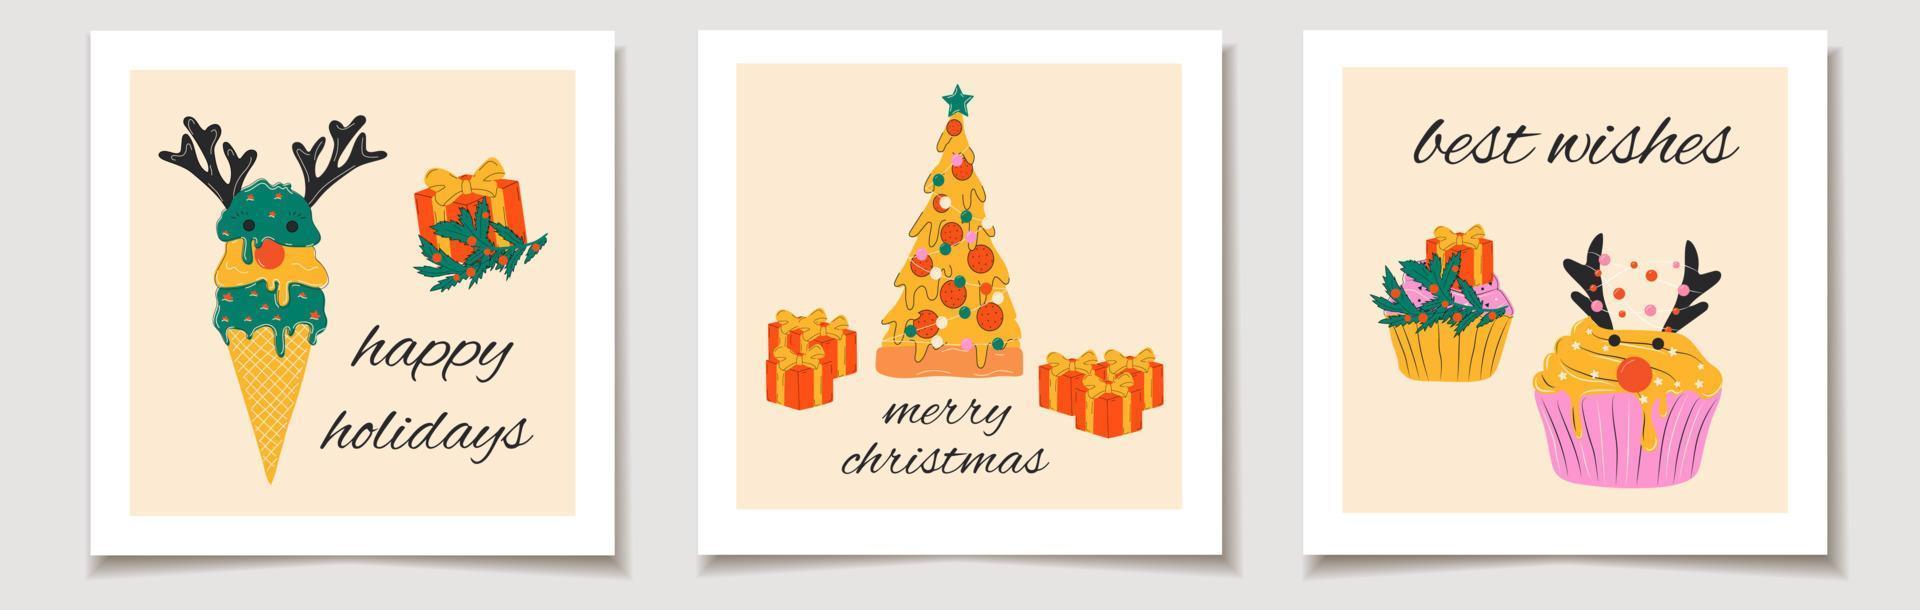 cartão de presente de vetor de natal ou etiqueta conjunto de natal pizza de comida fofa, sorvete, cupcakes decorados com decorações de natal. feliz natal letras, muitas felicidades.